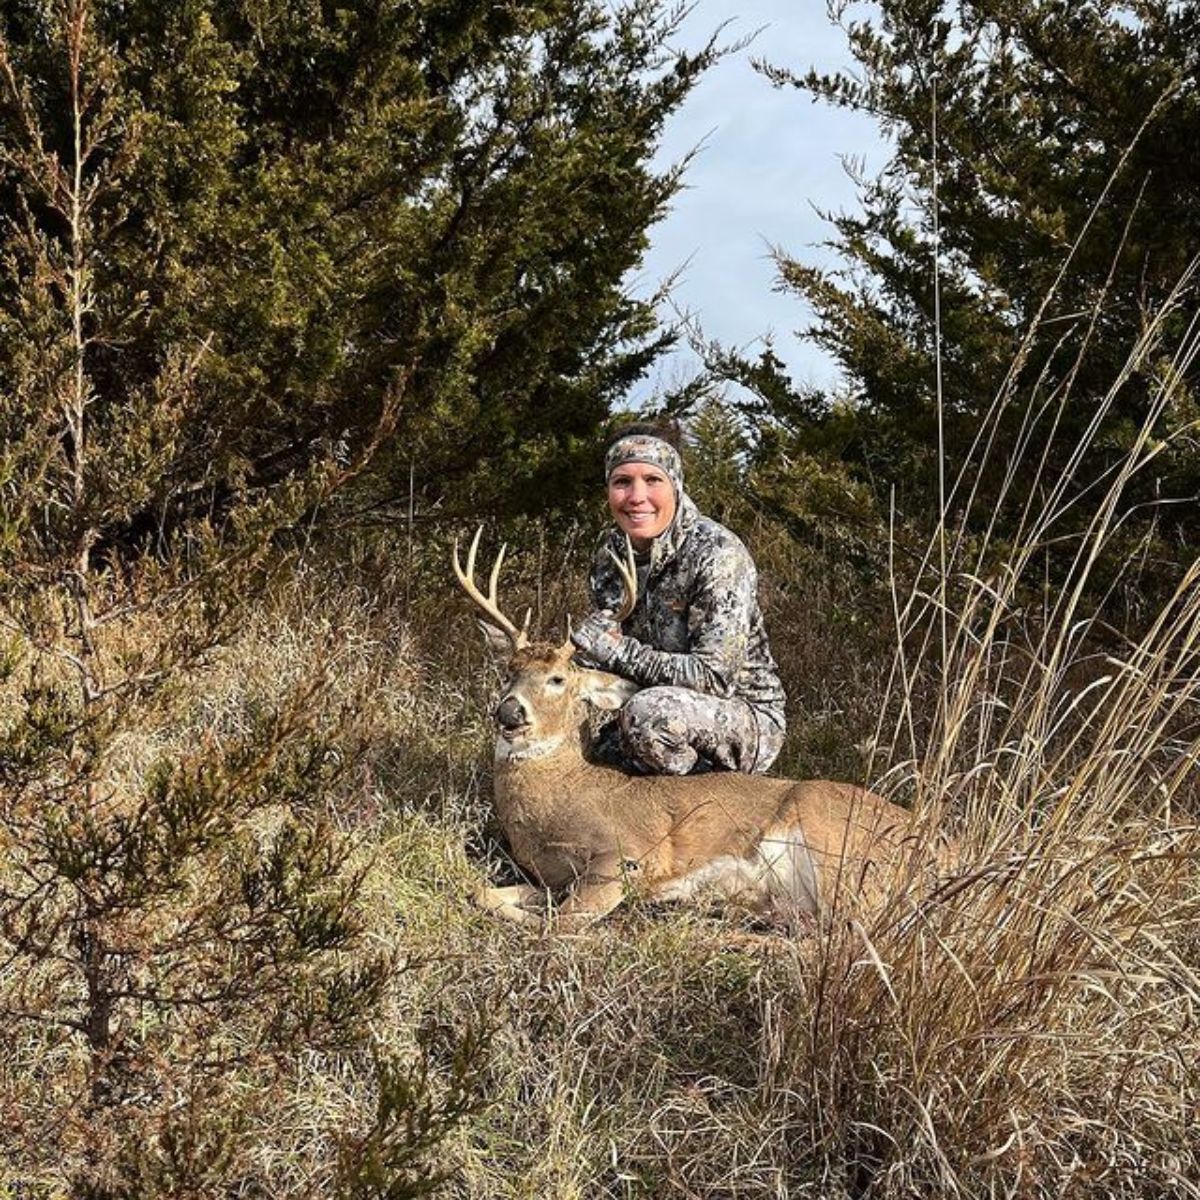 Photo of Sarah Lacina after hunting a deer.